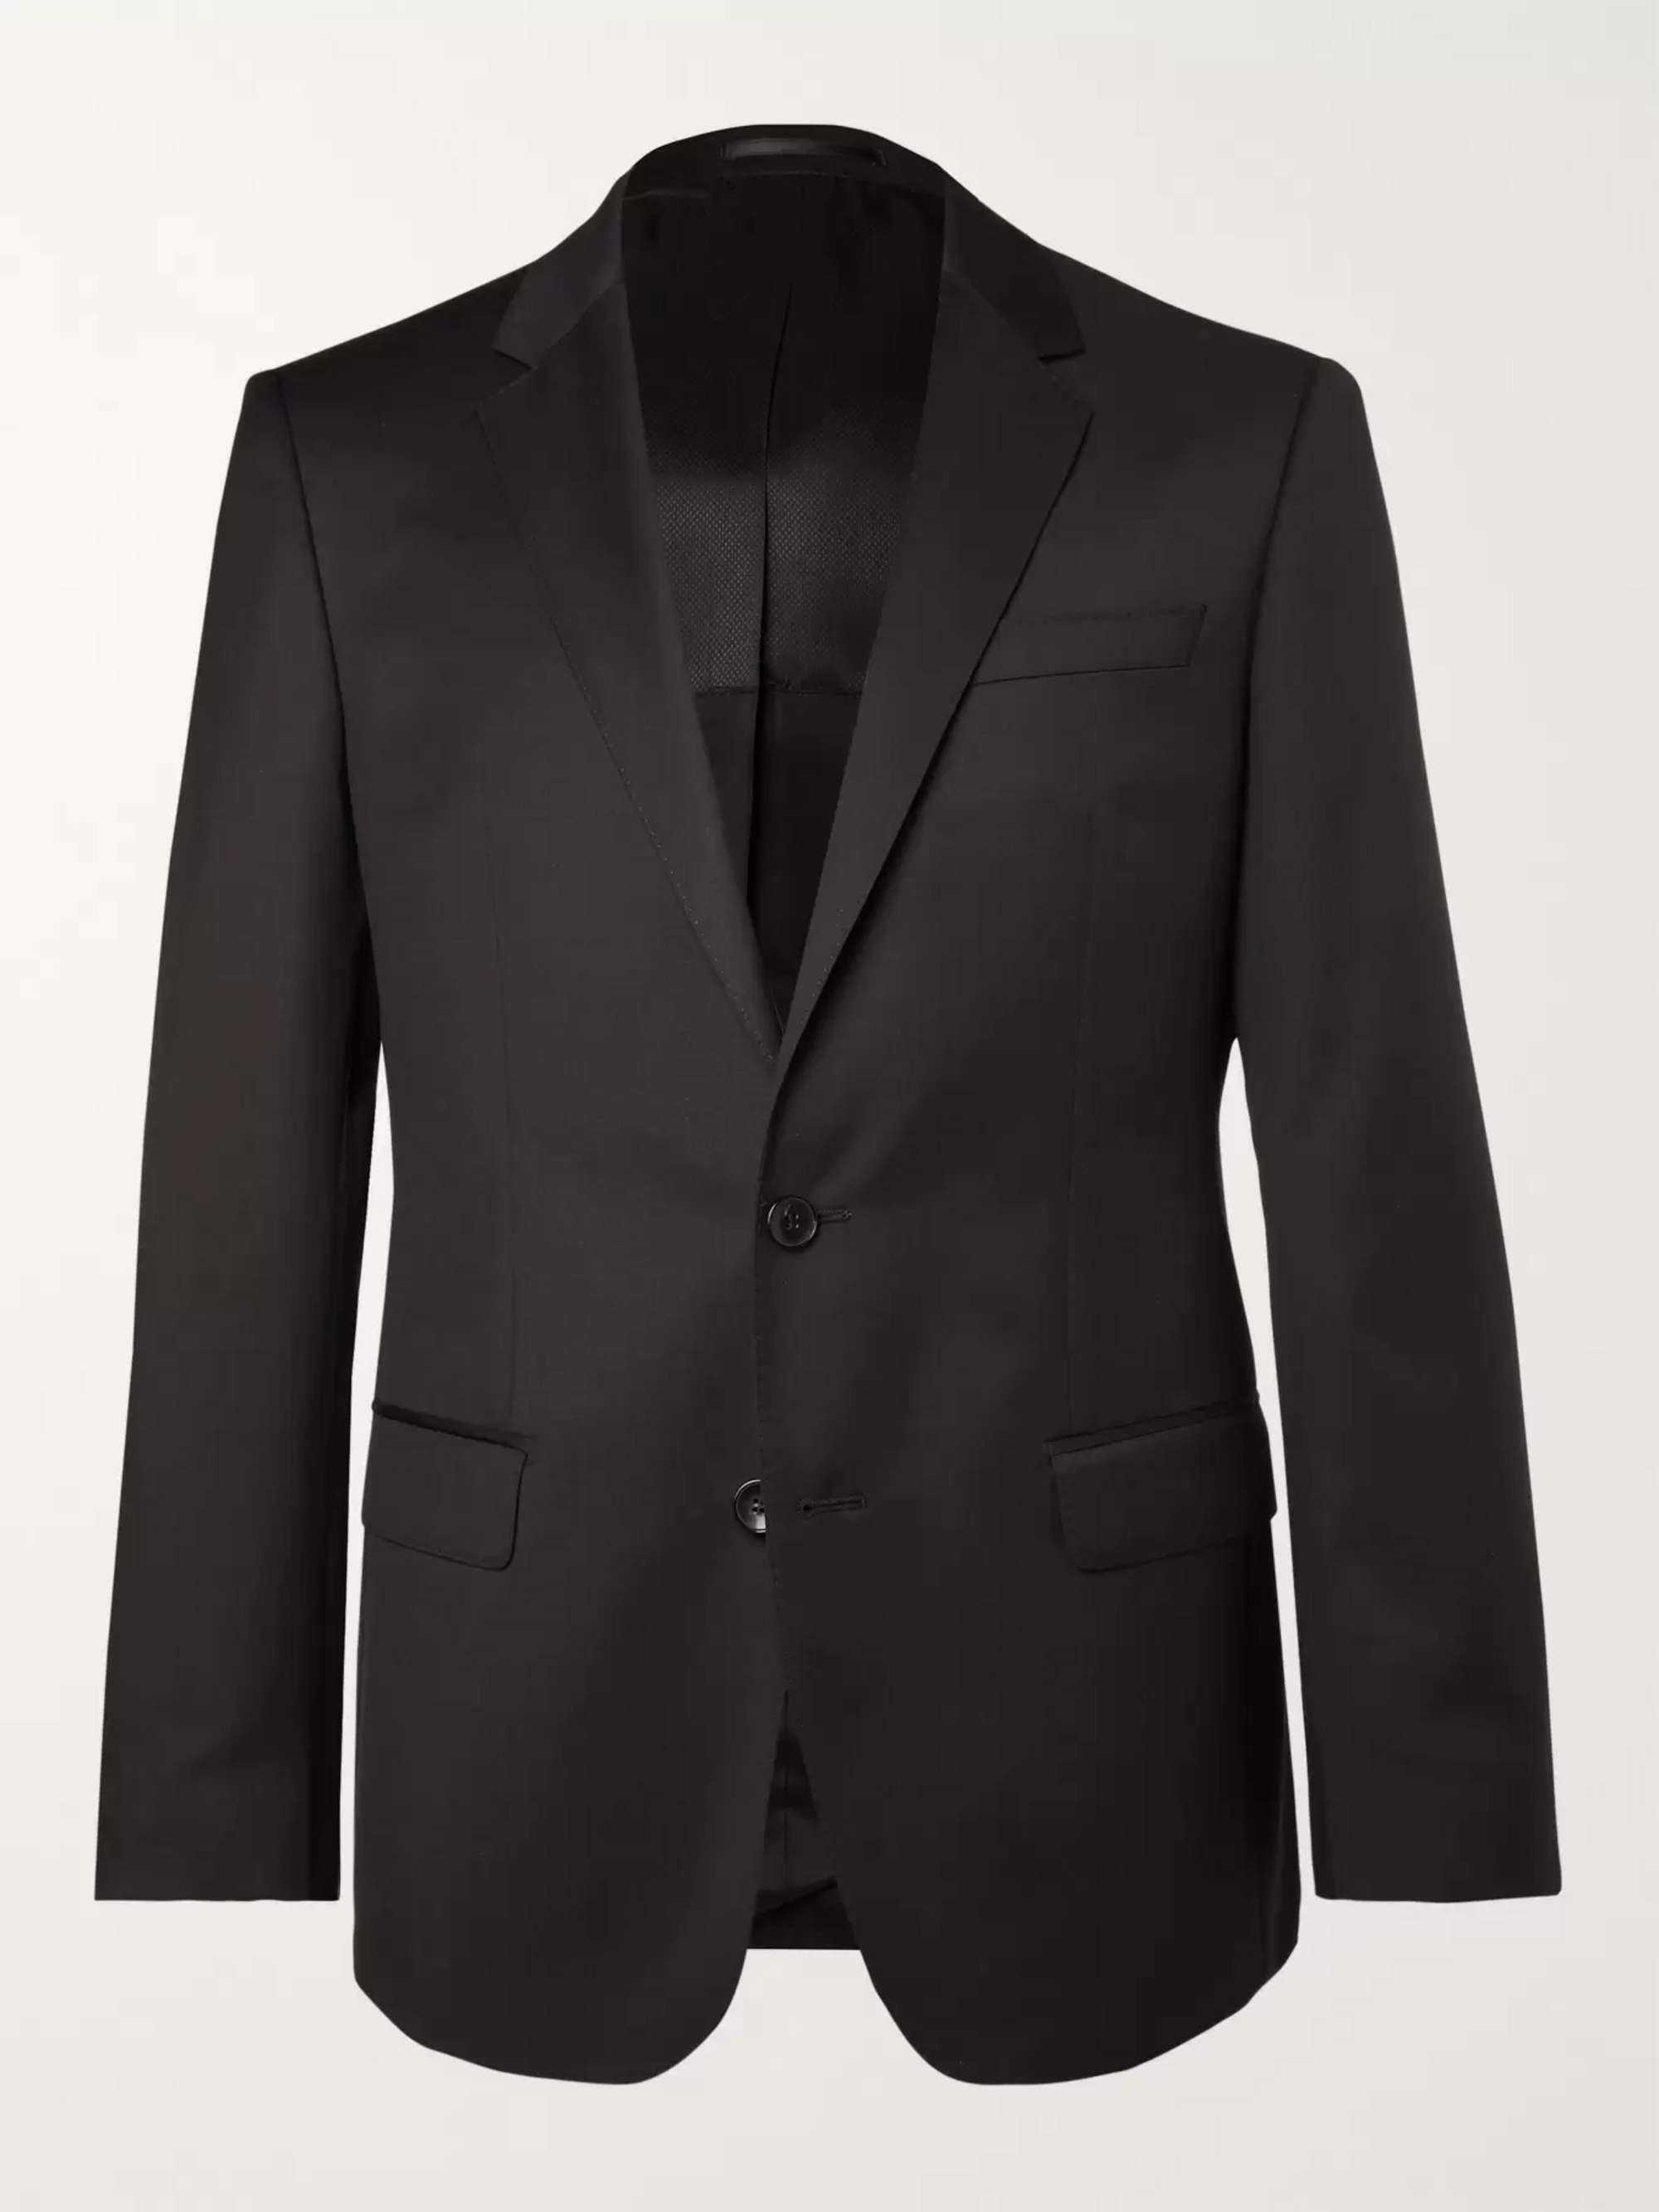 HUGO BOSS Grey Hayes Slim-Fit Super 120s Virgin Wool Suit Jacket